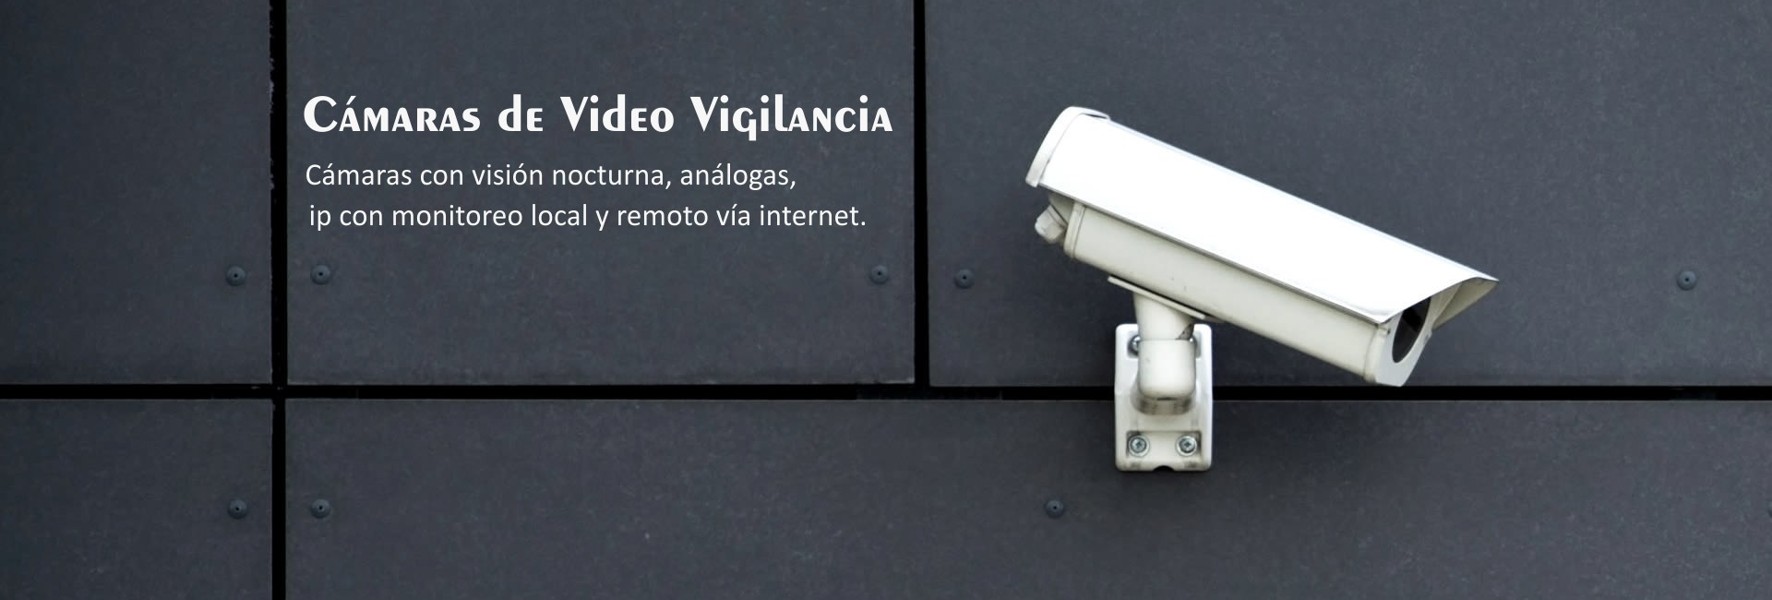 Cámaras de Video Vigilancia